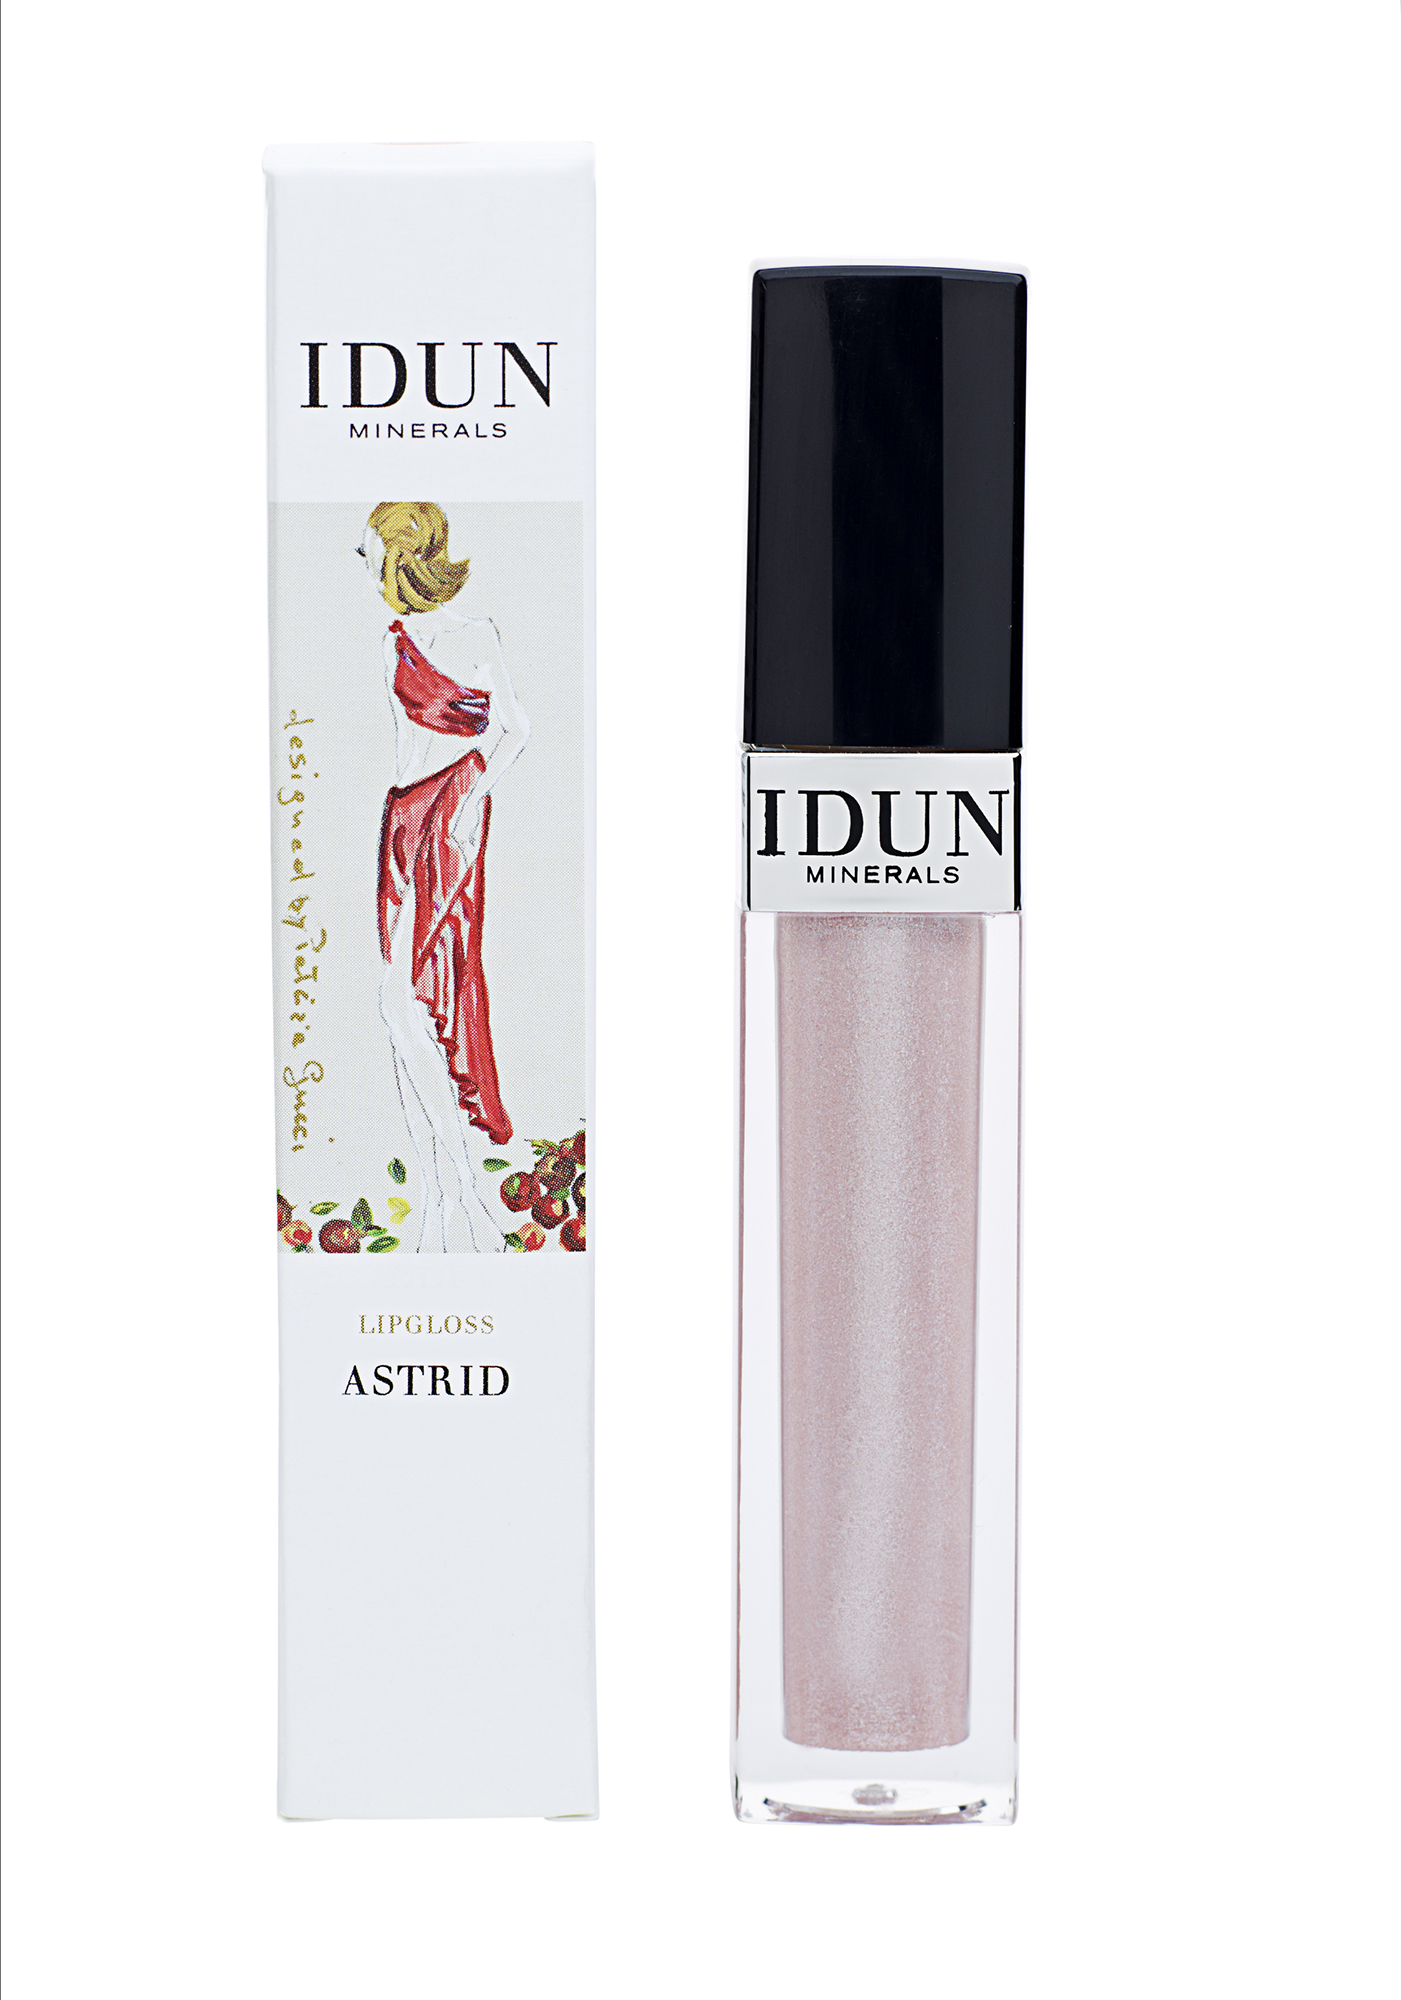 IDUN Minerals Lips Lipgloss Astrid, 6ml.